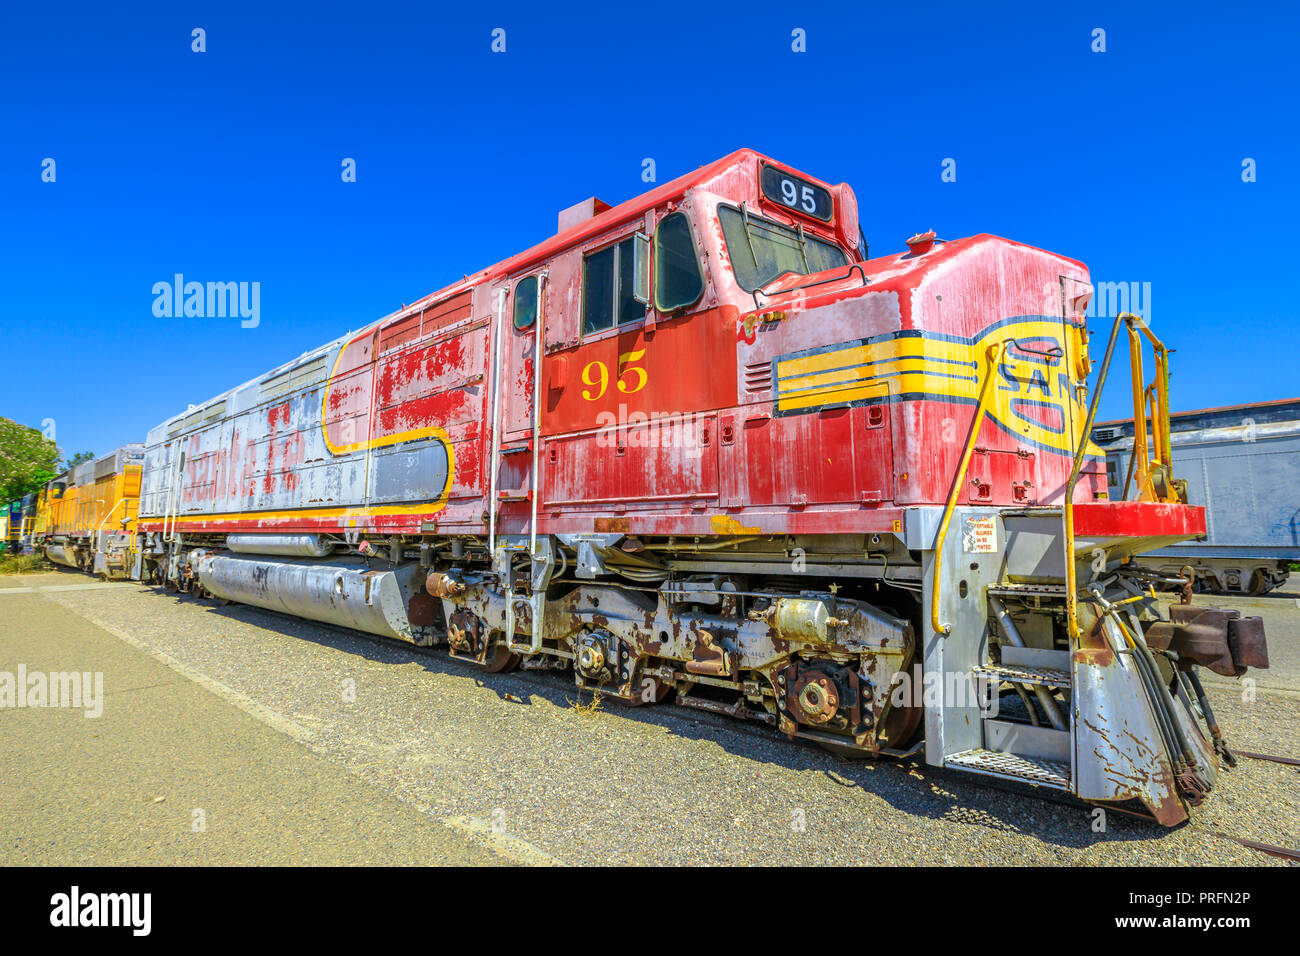 Barstow, Kalifornien, USA - 15. August 2018: Santa Fe railroad Motor 95 an Western America Railroad Museum in der Nähe von Harvey Haus Railroad Depotis zur Geschichte der Eisenbahn im Pacific Southwest gewidmet. Stockfoto